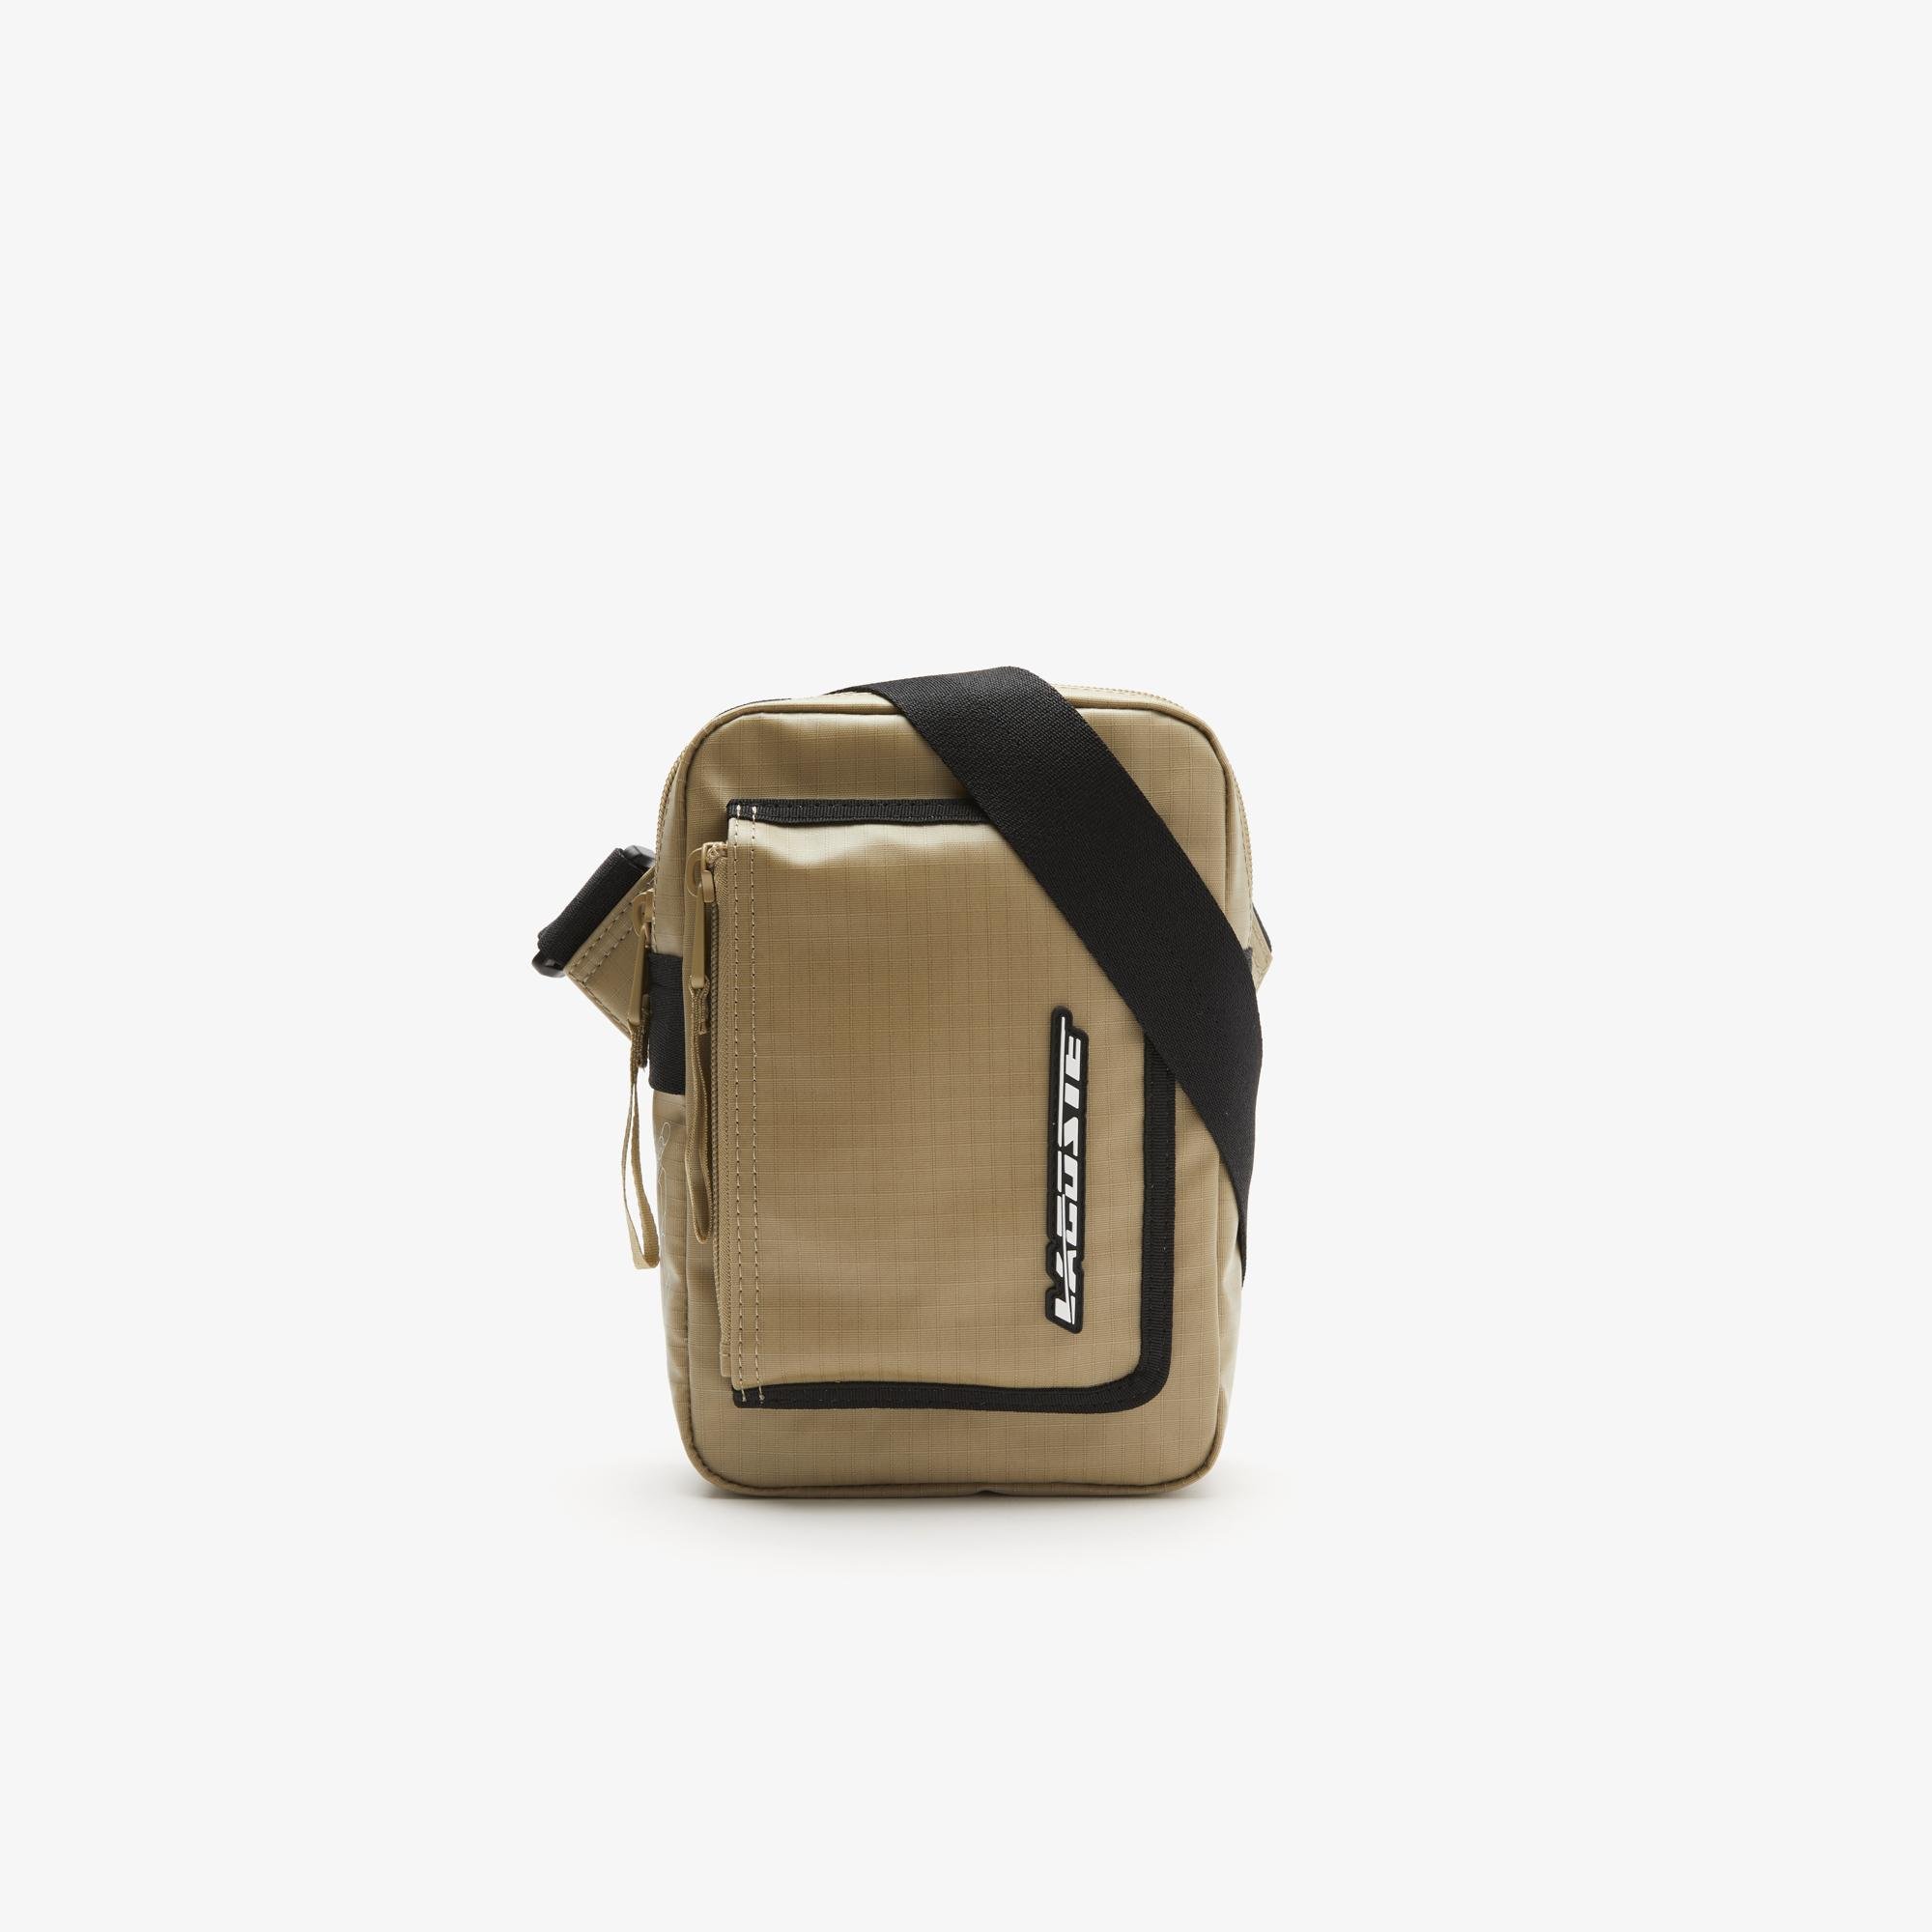 Lacoste pánská kontrastní taška na zip